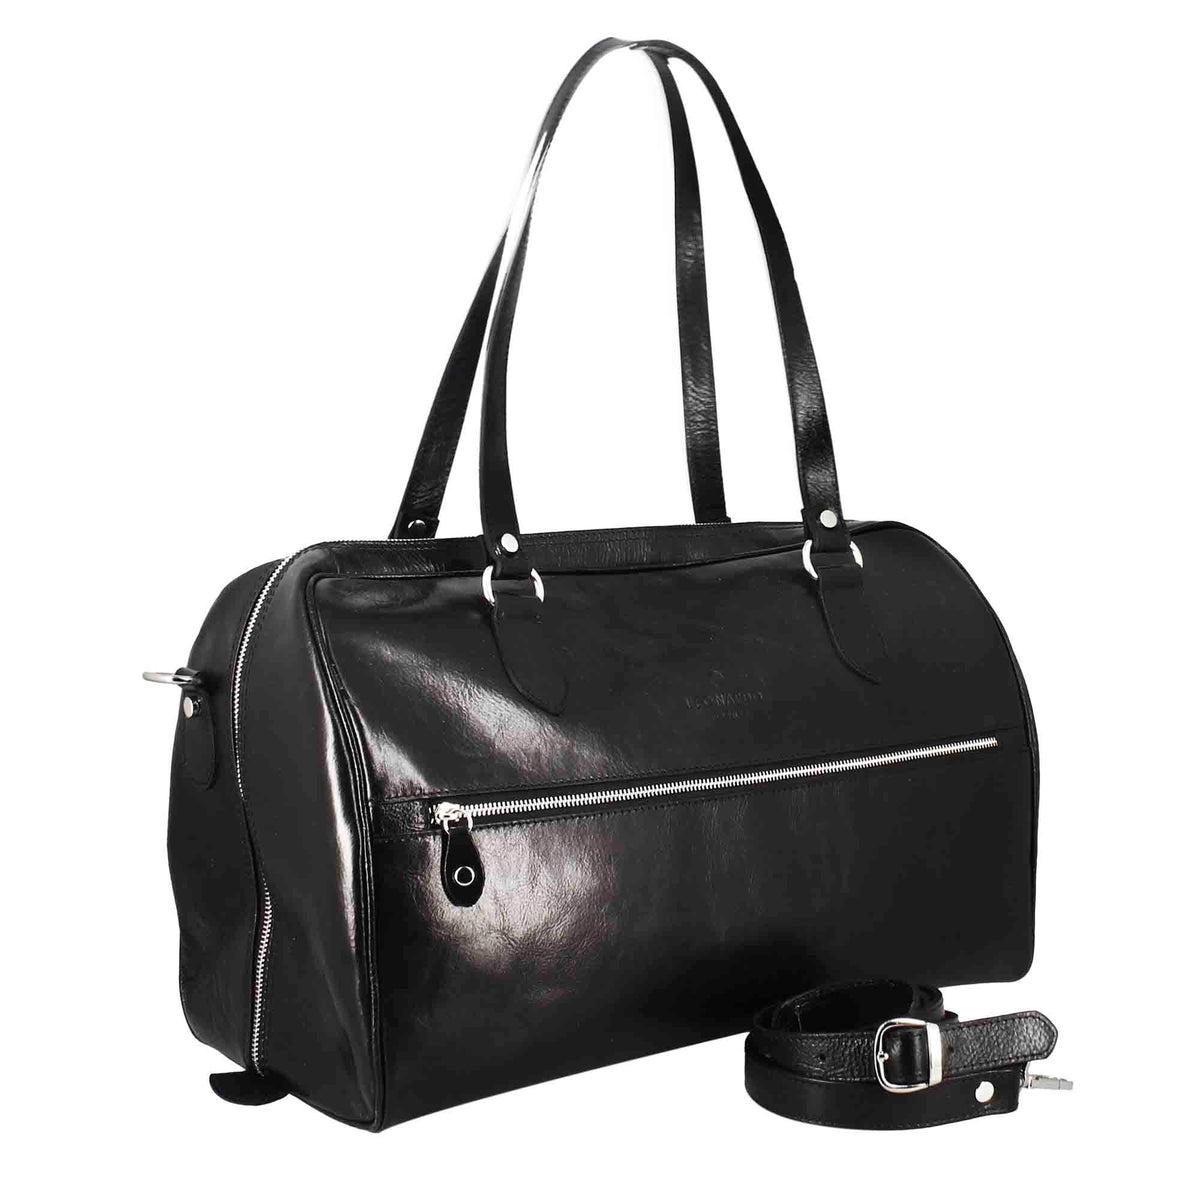 Schwarze Reisetaschen aus Leder mit Griffen und abnehmbarem Schulterriemen